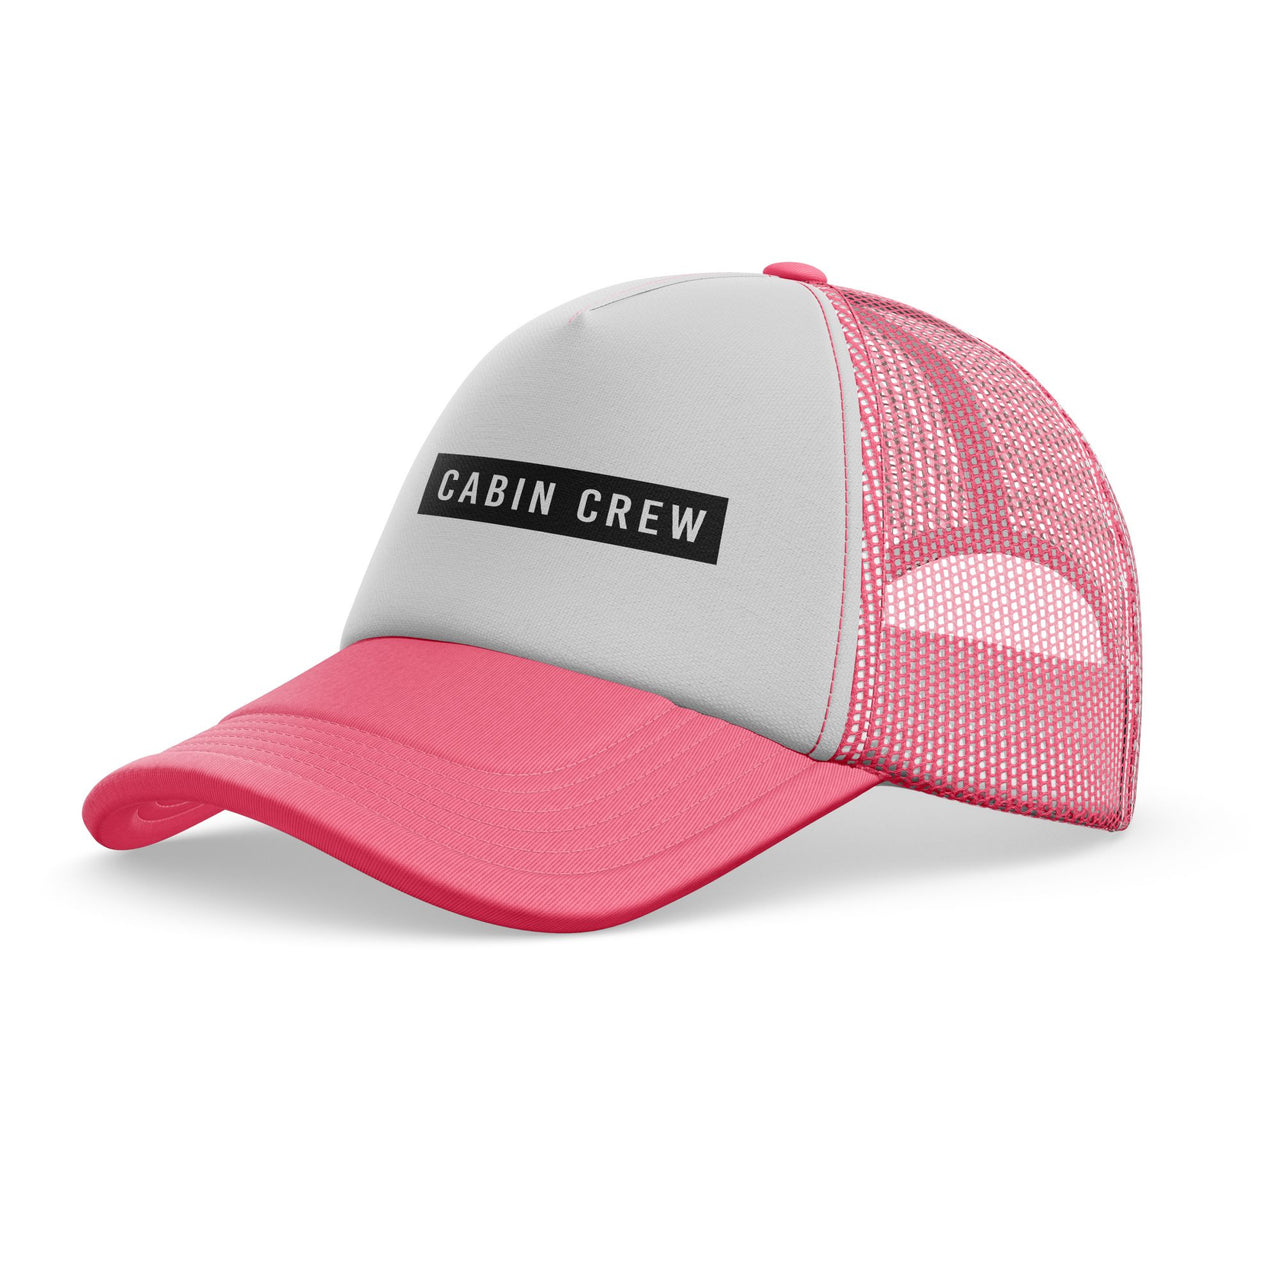 Cabin Crew Text Designed Trucker Caps & Hats